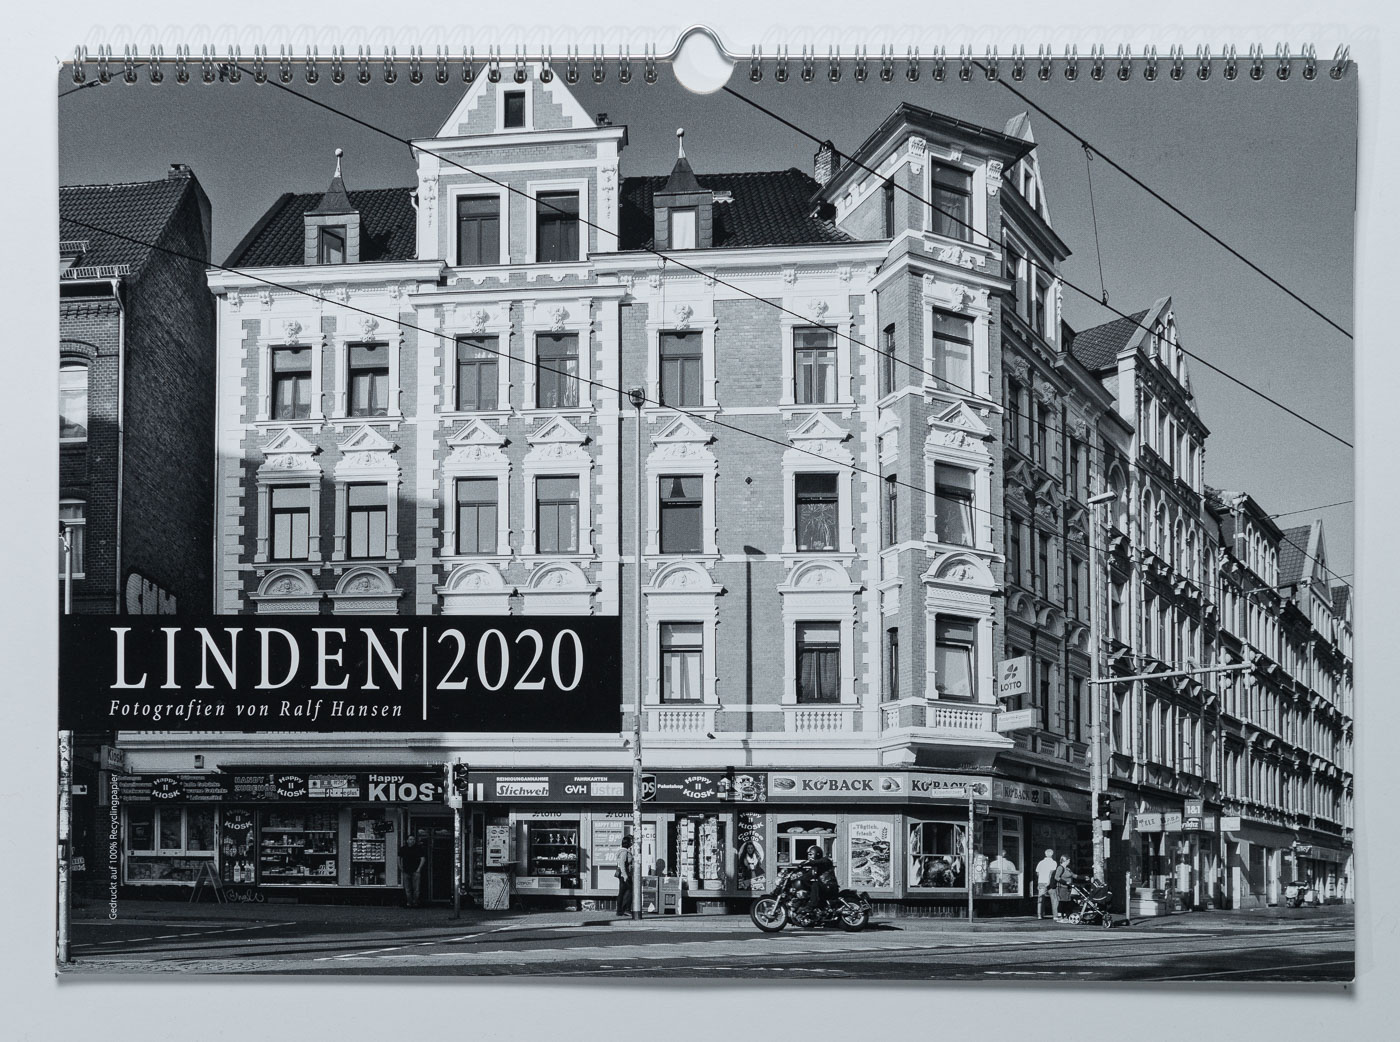 Lindenkalender LINDEN 2020